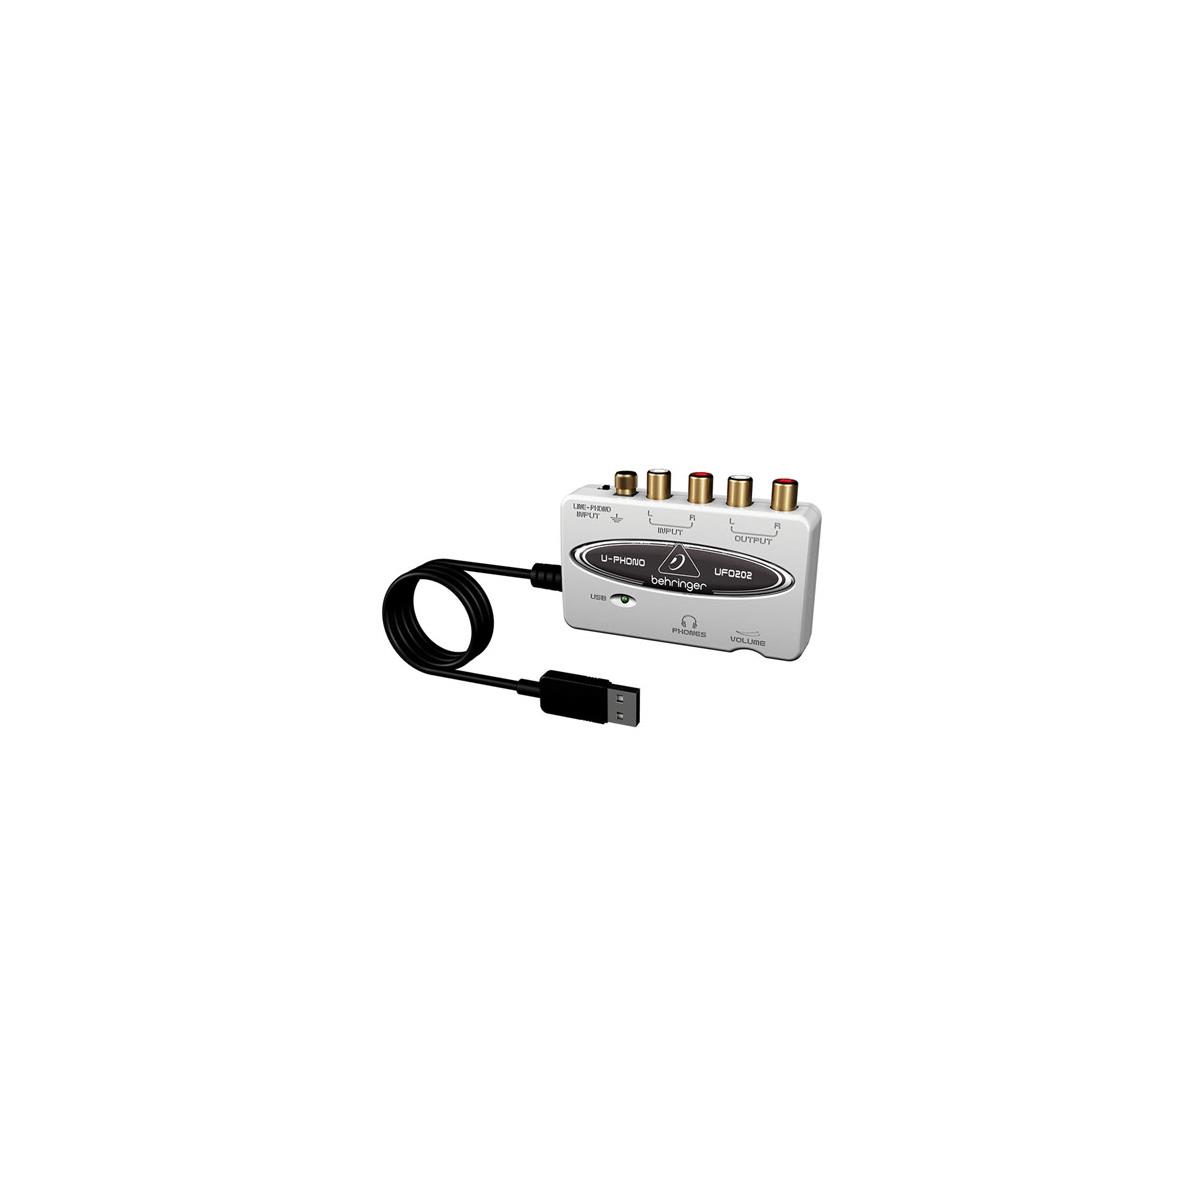 Image of Behringer U-PHONO UFO202 Audiophile USB/Audio Interface